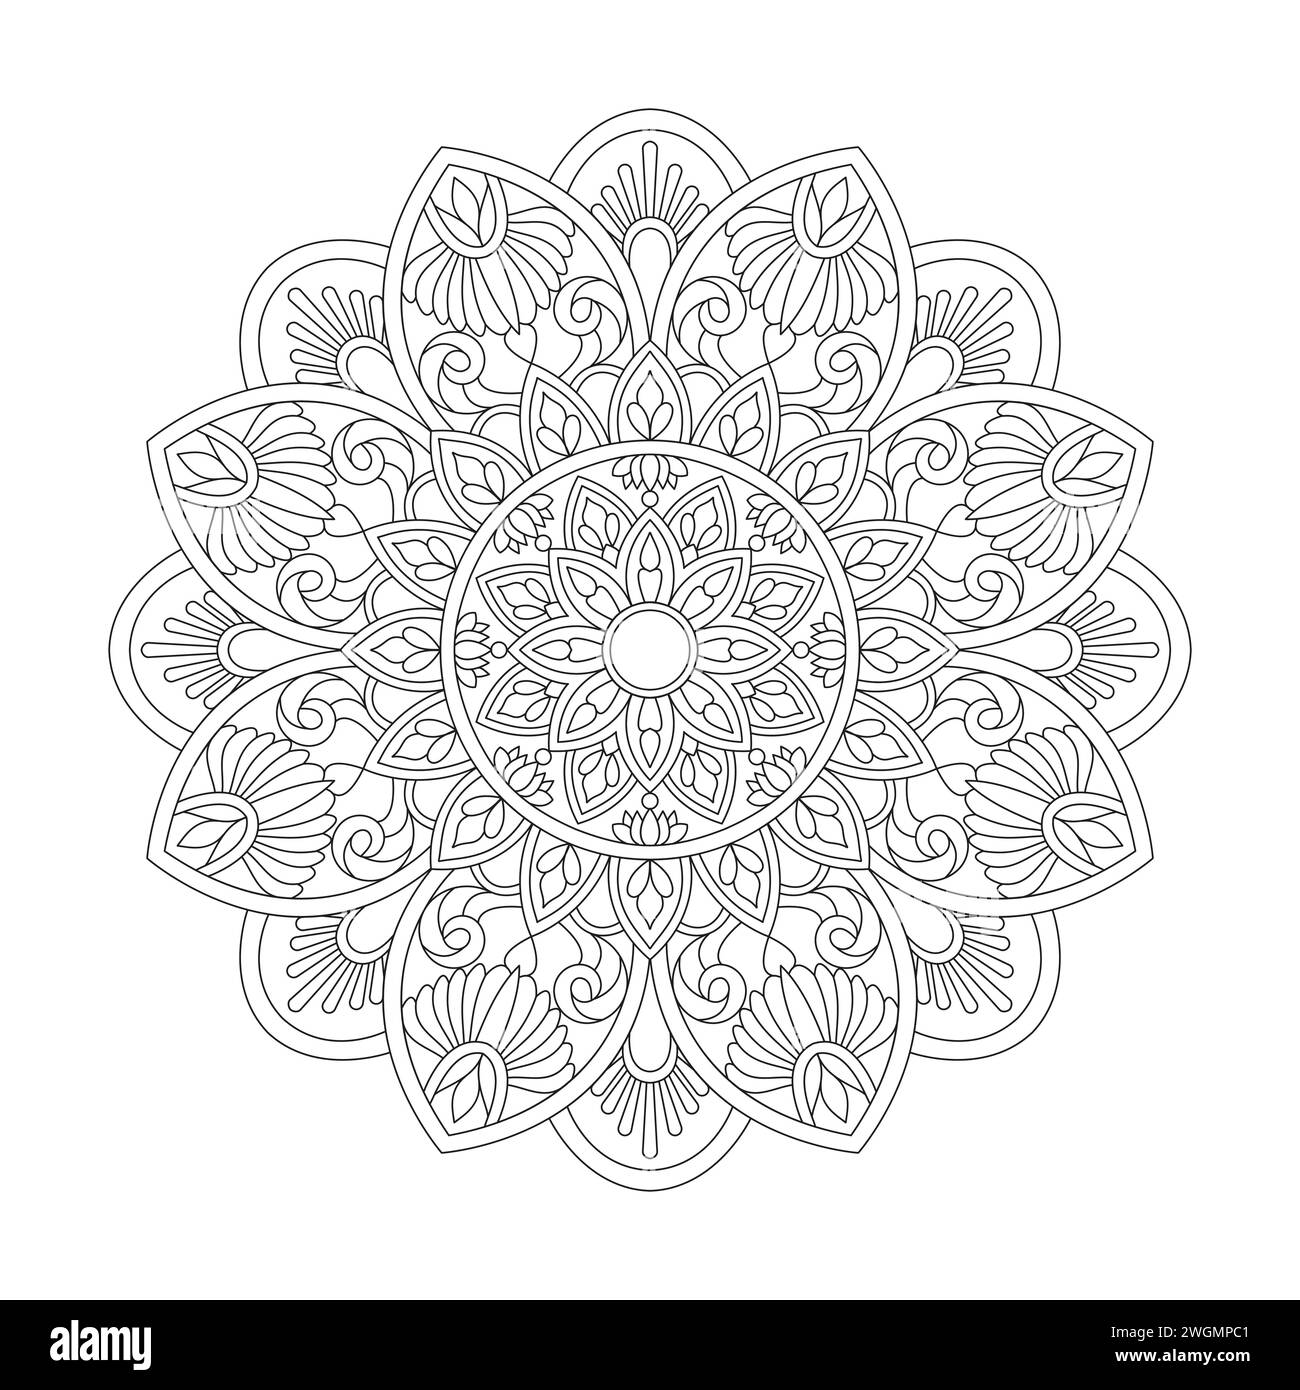 Relaxation Floral Mandala Coloring Book page pour kdp Book intérieur, pétales paisibles, capacité de se détendre, expériences cérébrales, Haven harmonieux, paisible P Illustration de Vecteur